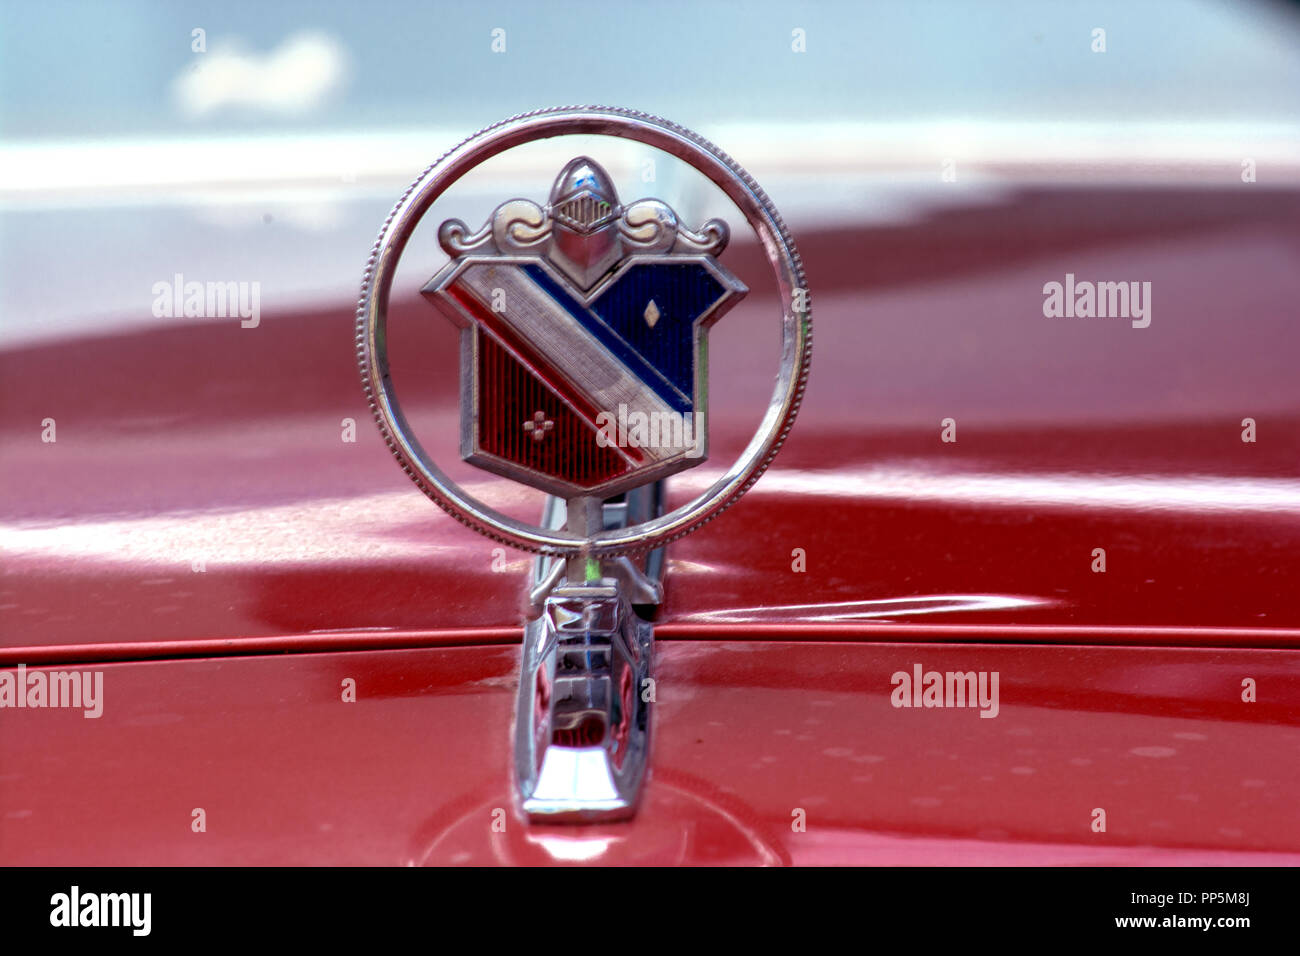 Concept automobile : The emblem Stock Photo